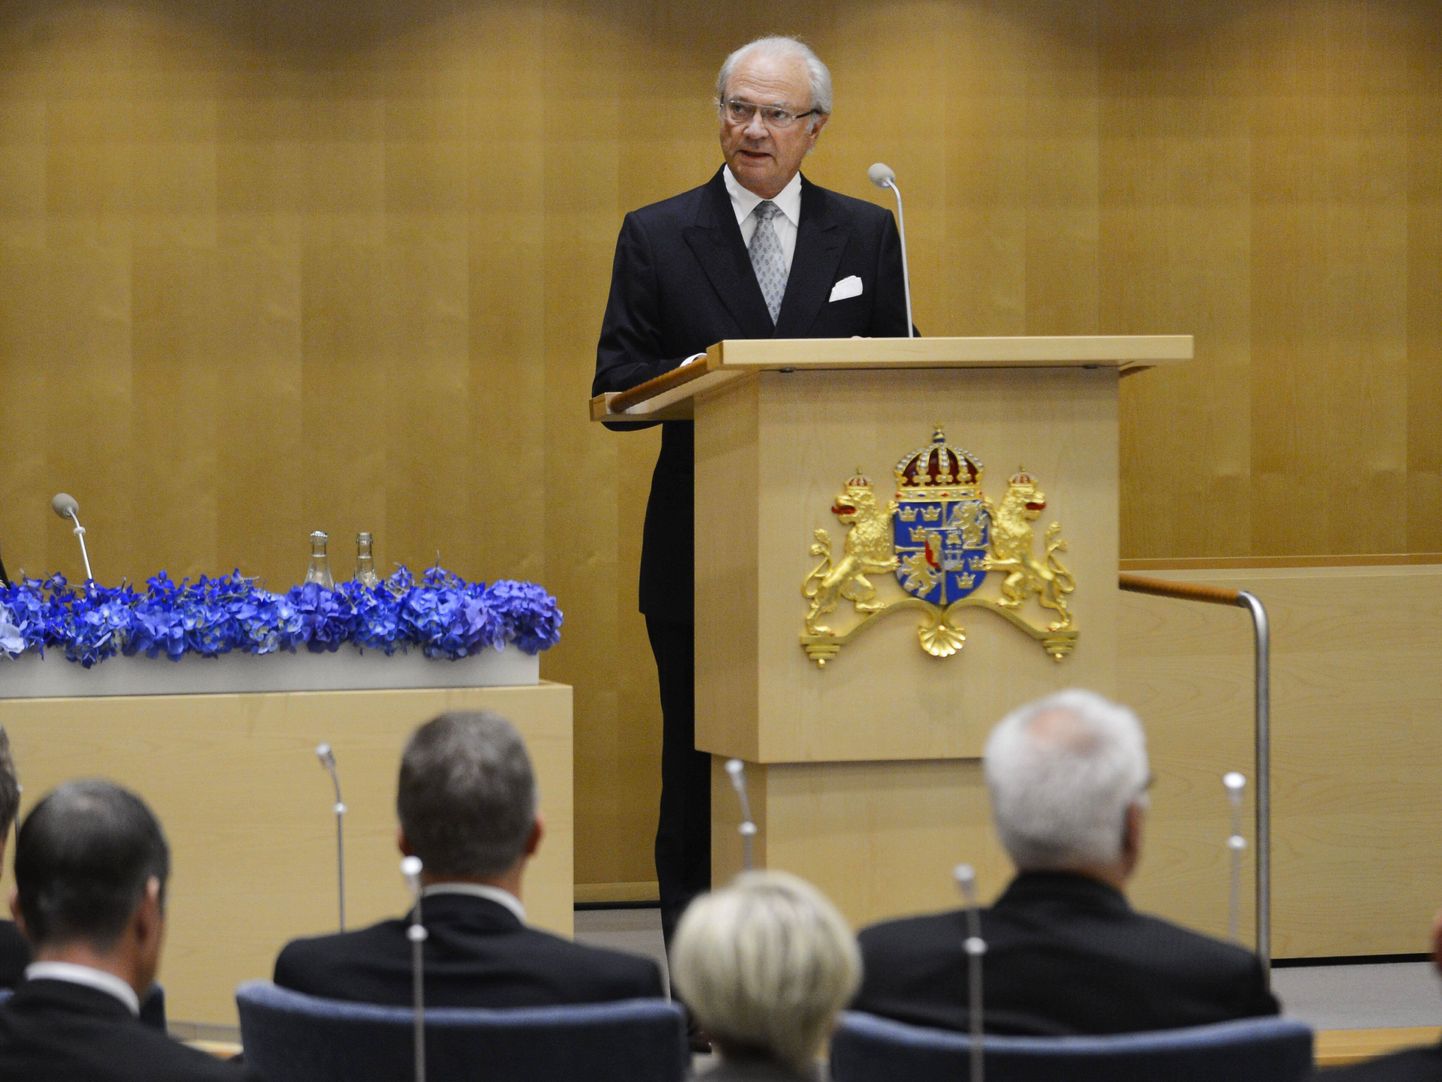 Rootsi kuningas Carl XVI Gustaf Riksdagi avamas